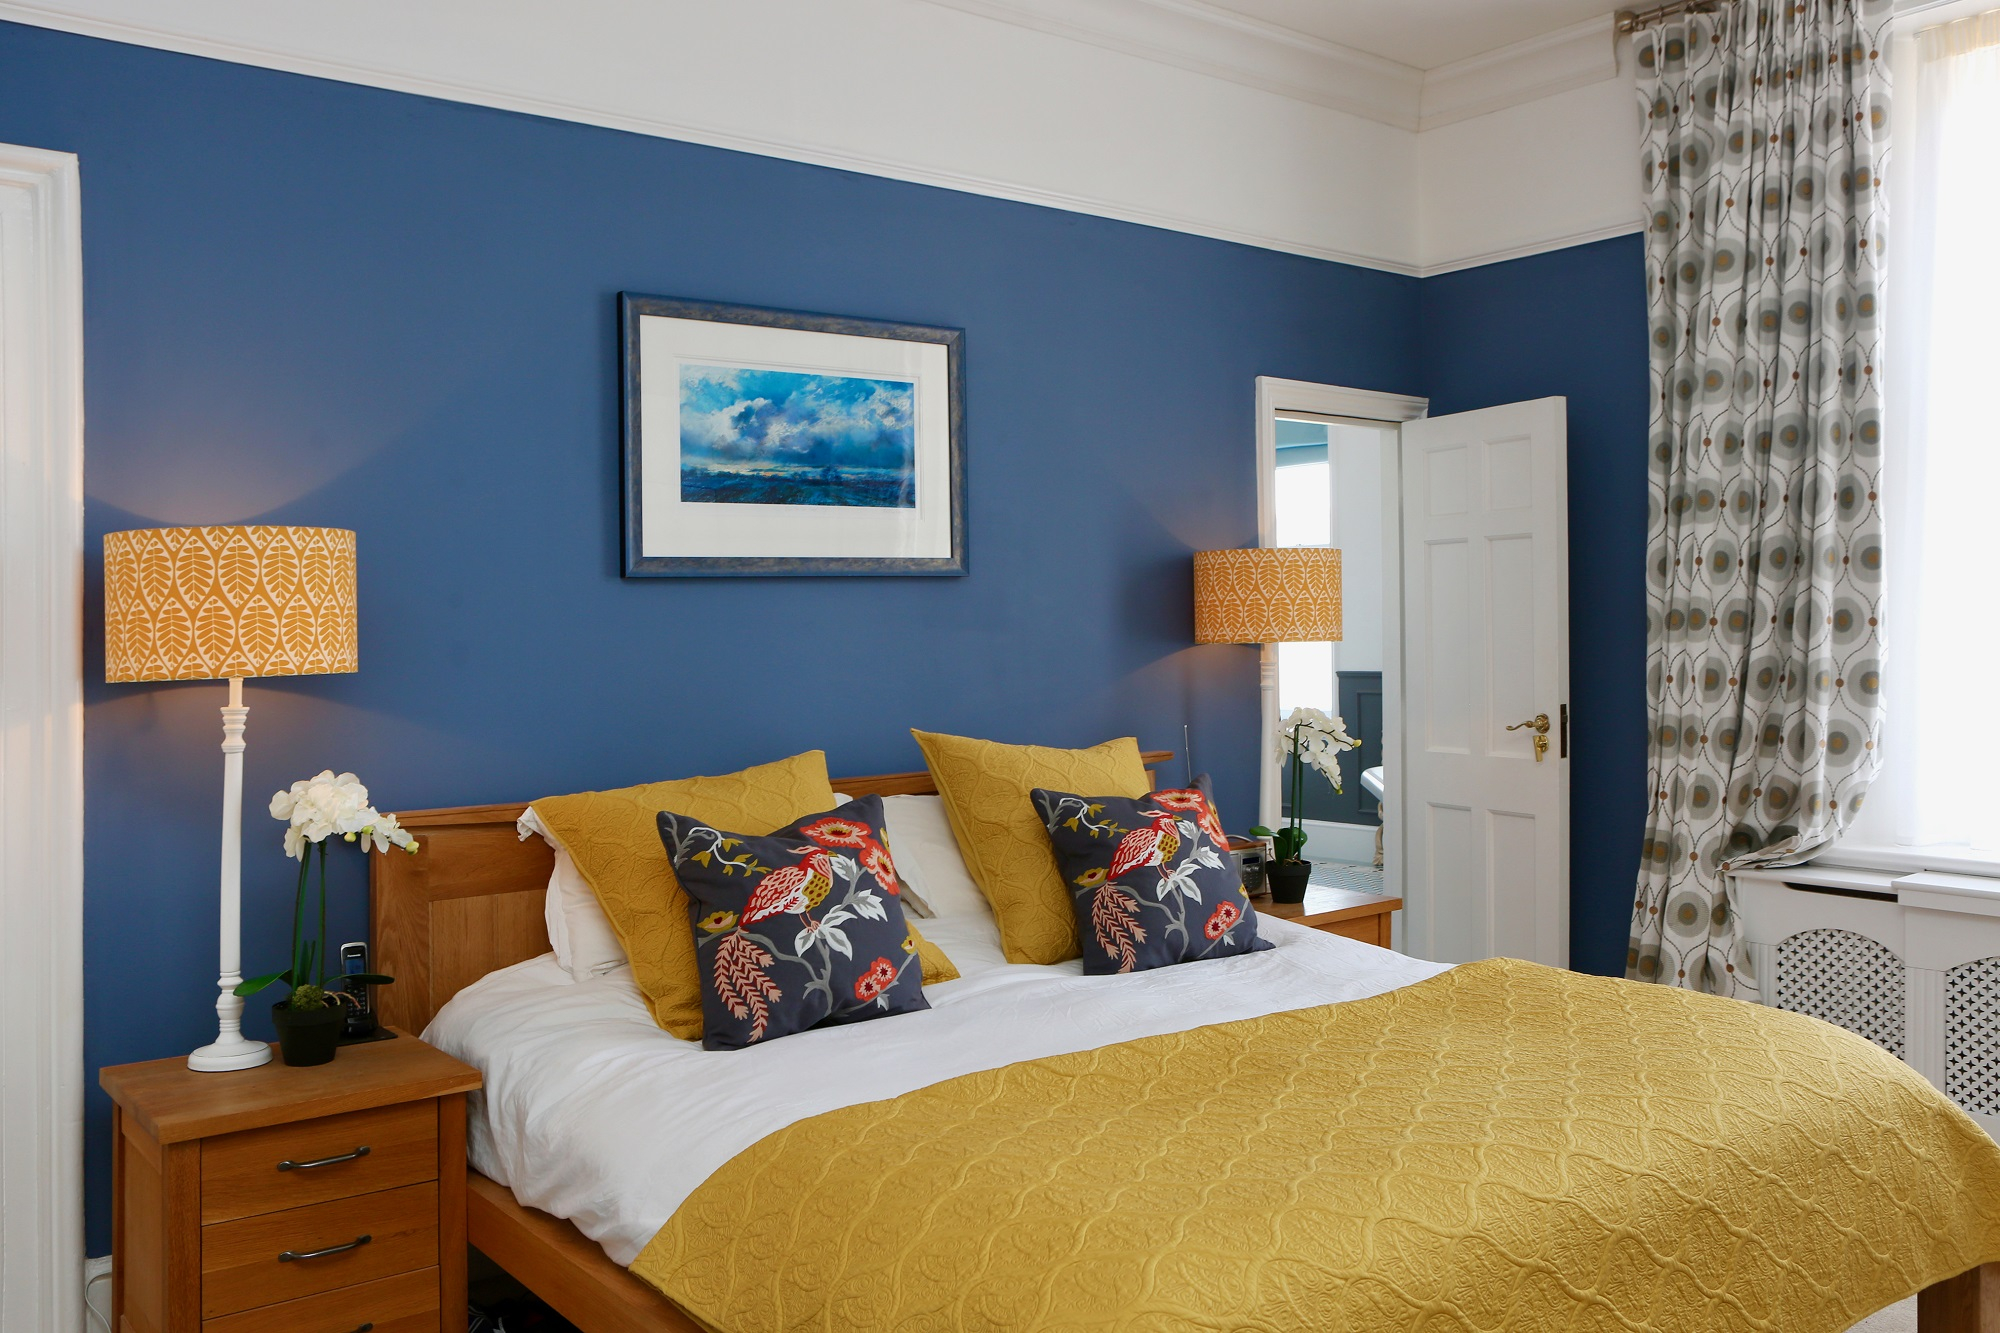 Синяя спальня - 188 фото идеального дизайна с синим оттенком!